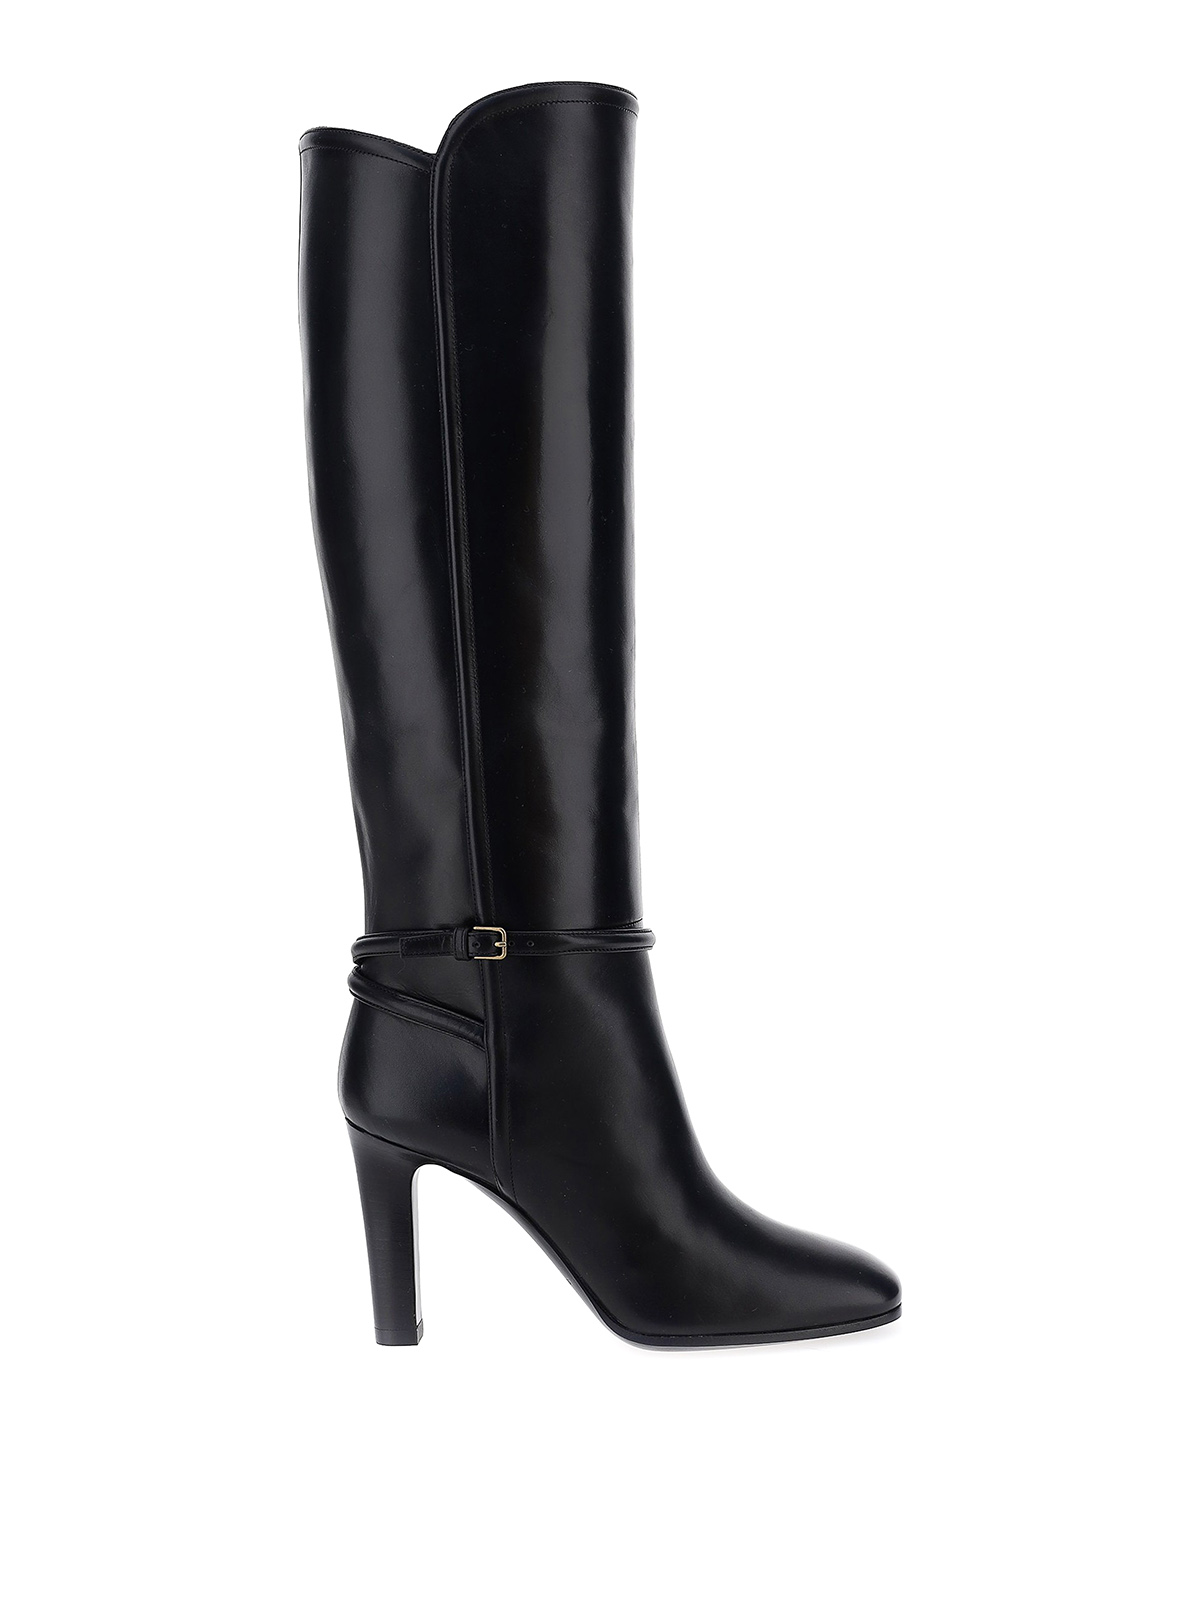 Boots Saint Laurent - Jane boots - 6326291YU001000 | Shop online at iKRIX